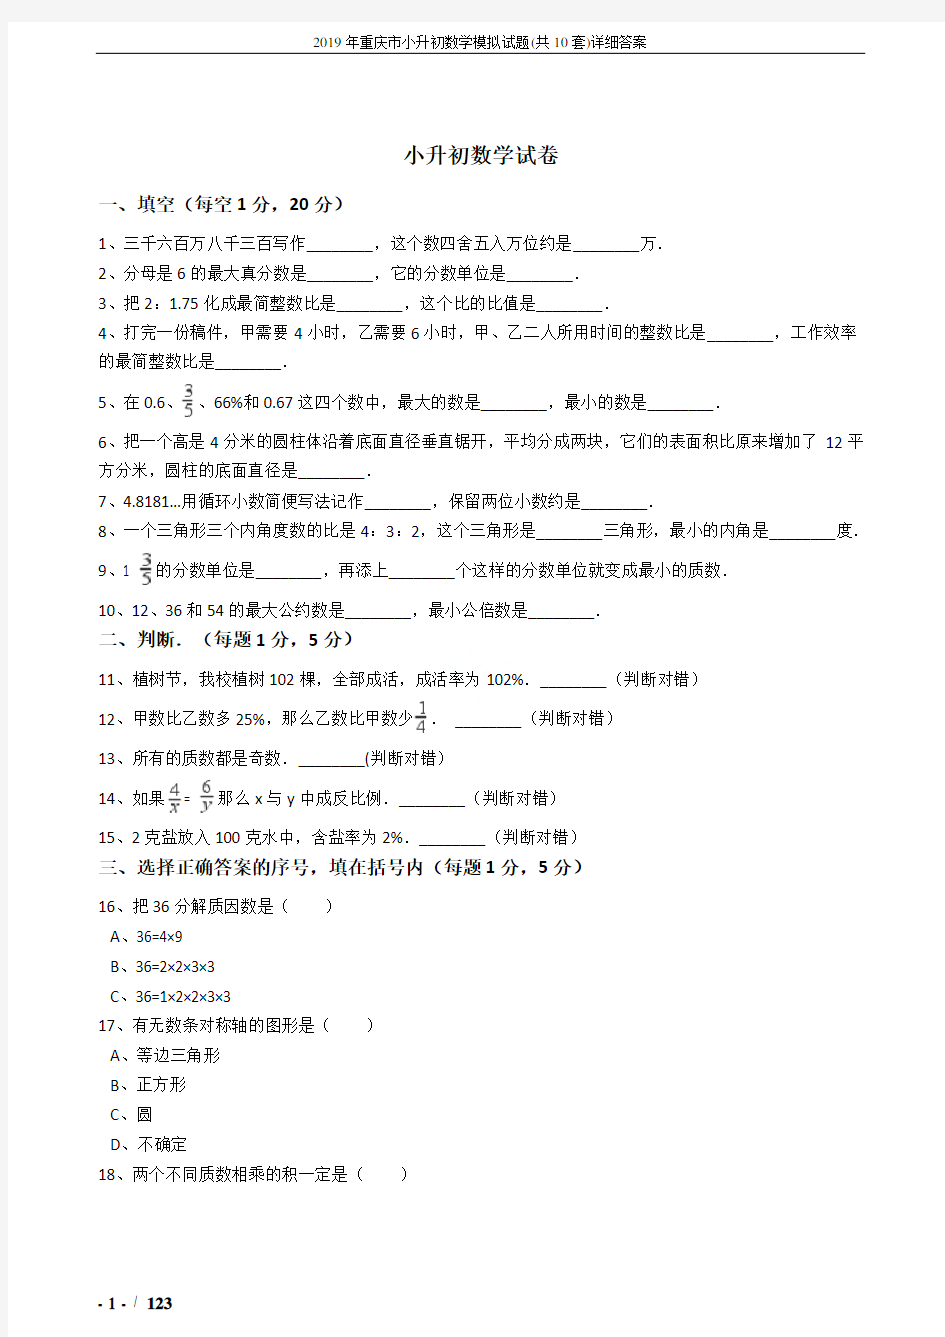 2019年重庆市小升初数学模拟试题(共10套)详细答案